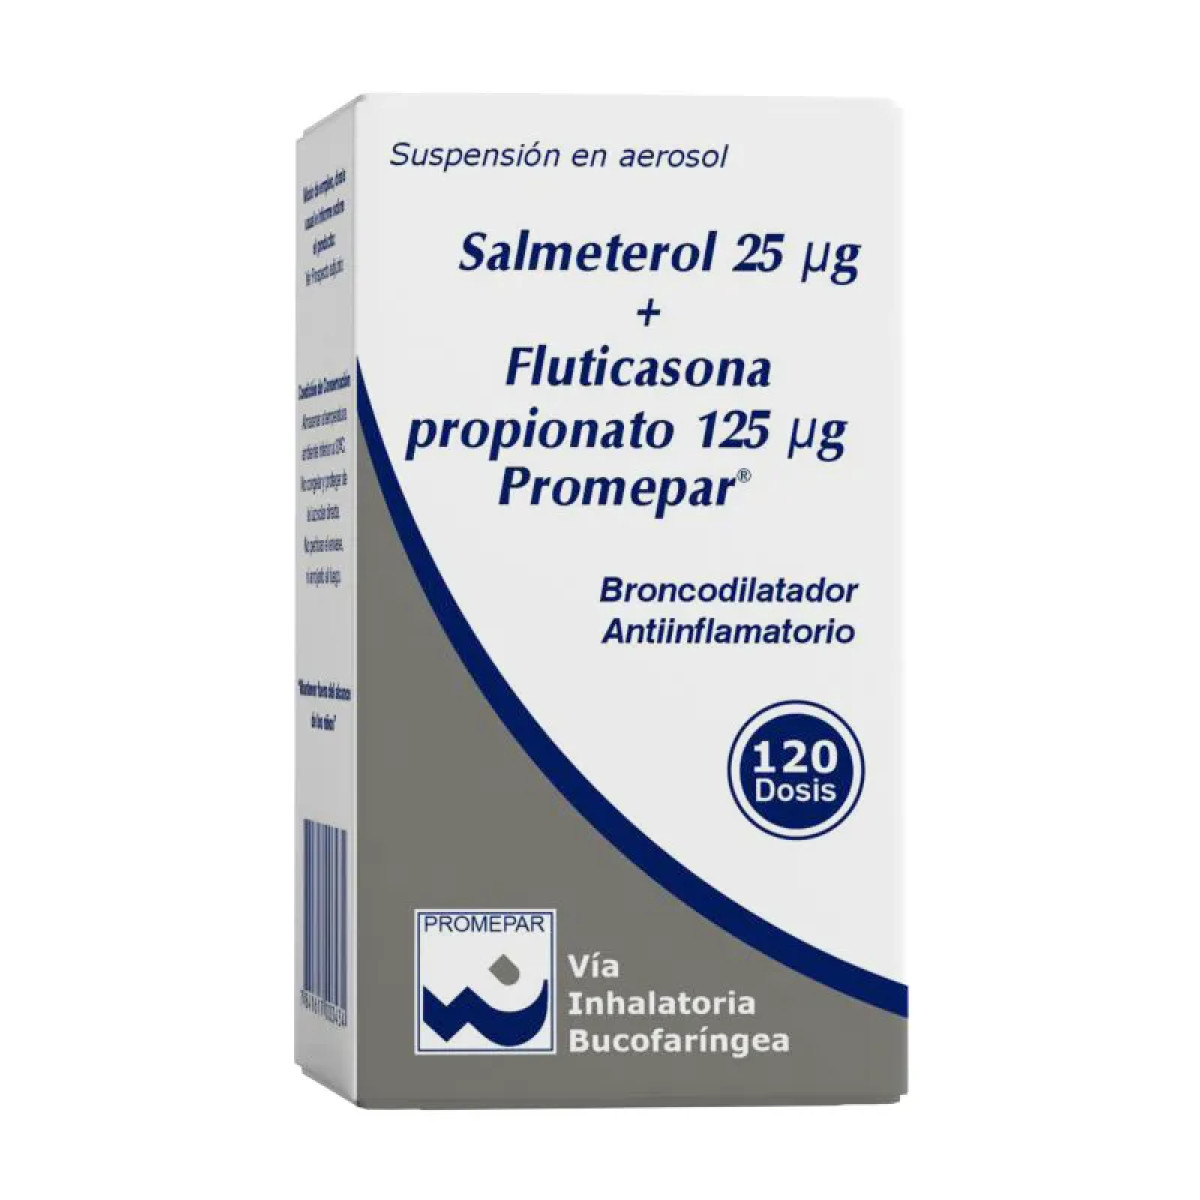 SALMETEROL 25 UG + FLUTICASONA125UG